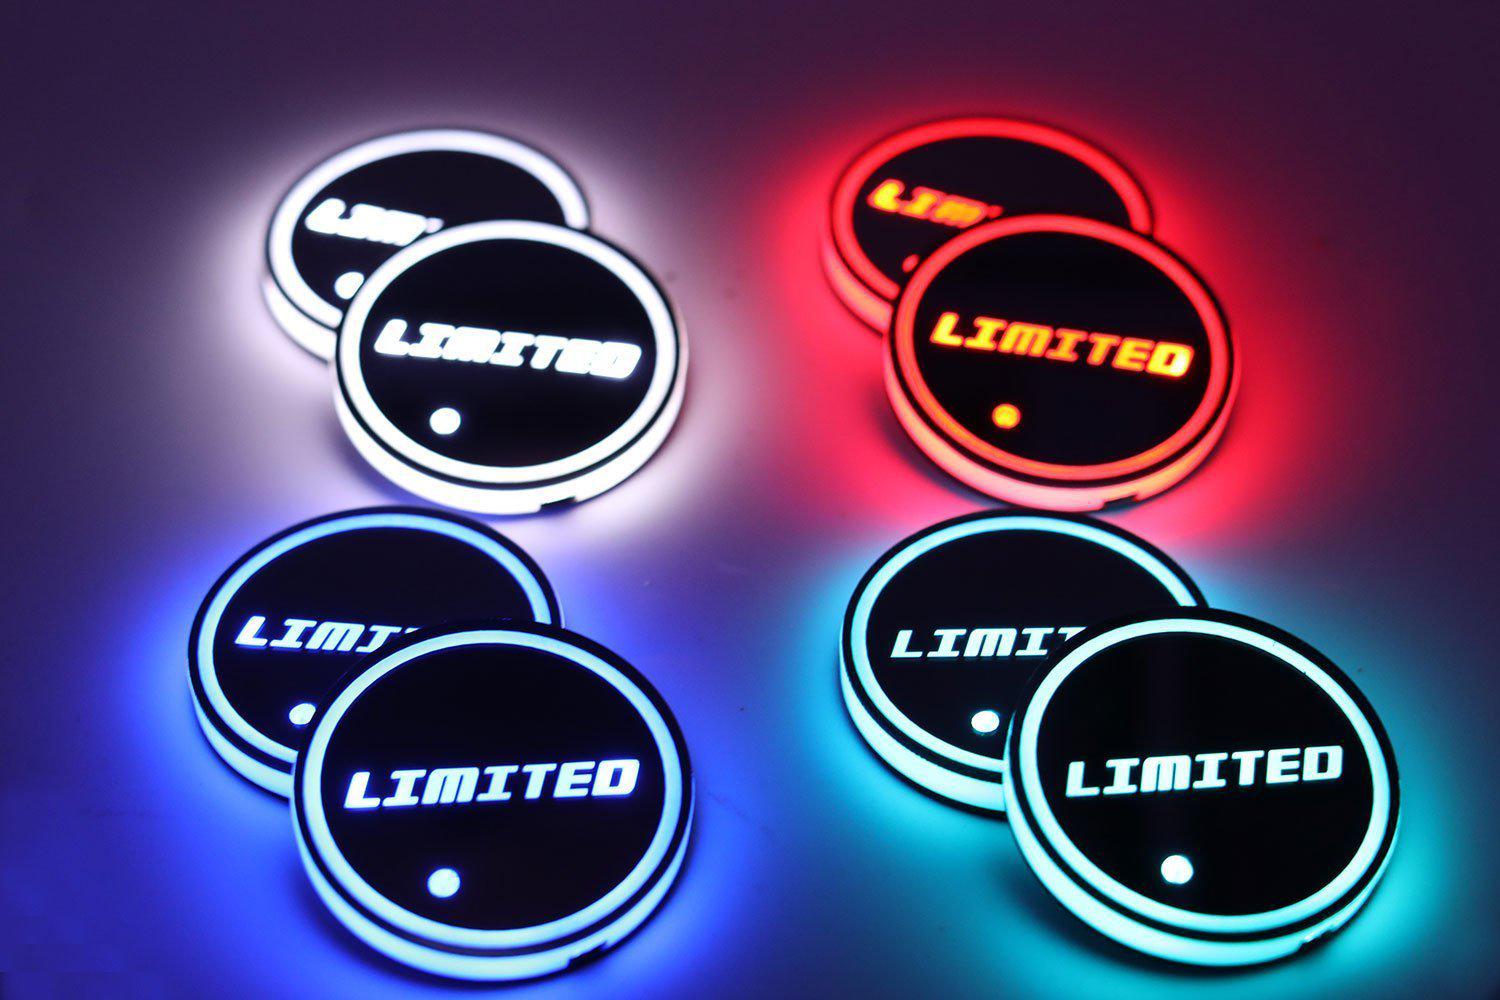 2015 - 2020 F150 LED Cup Holder Coaster Kit-2015-18 F150 LEDS-F150LEDs.com